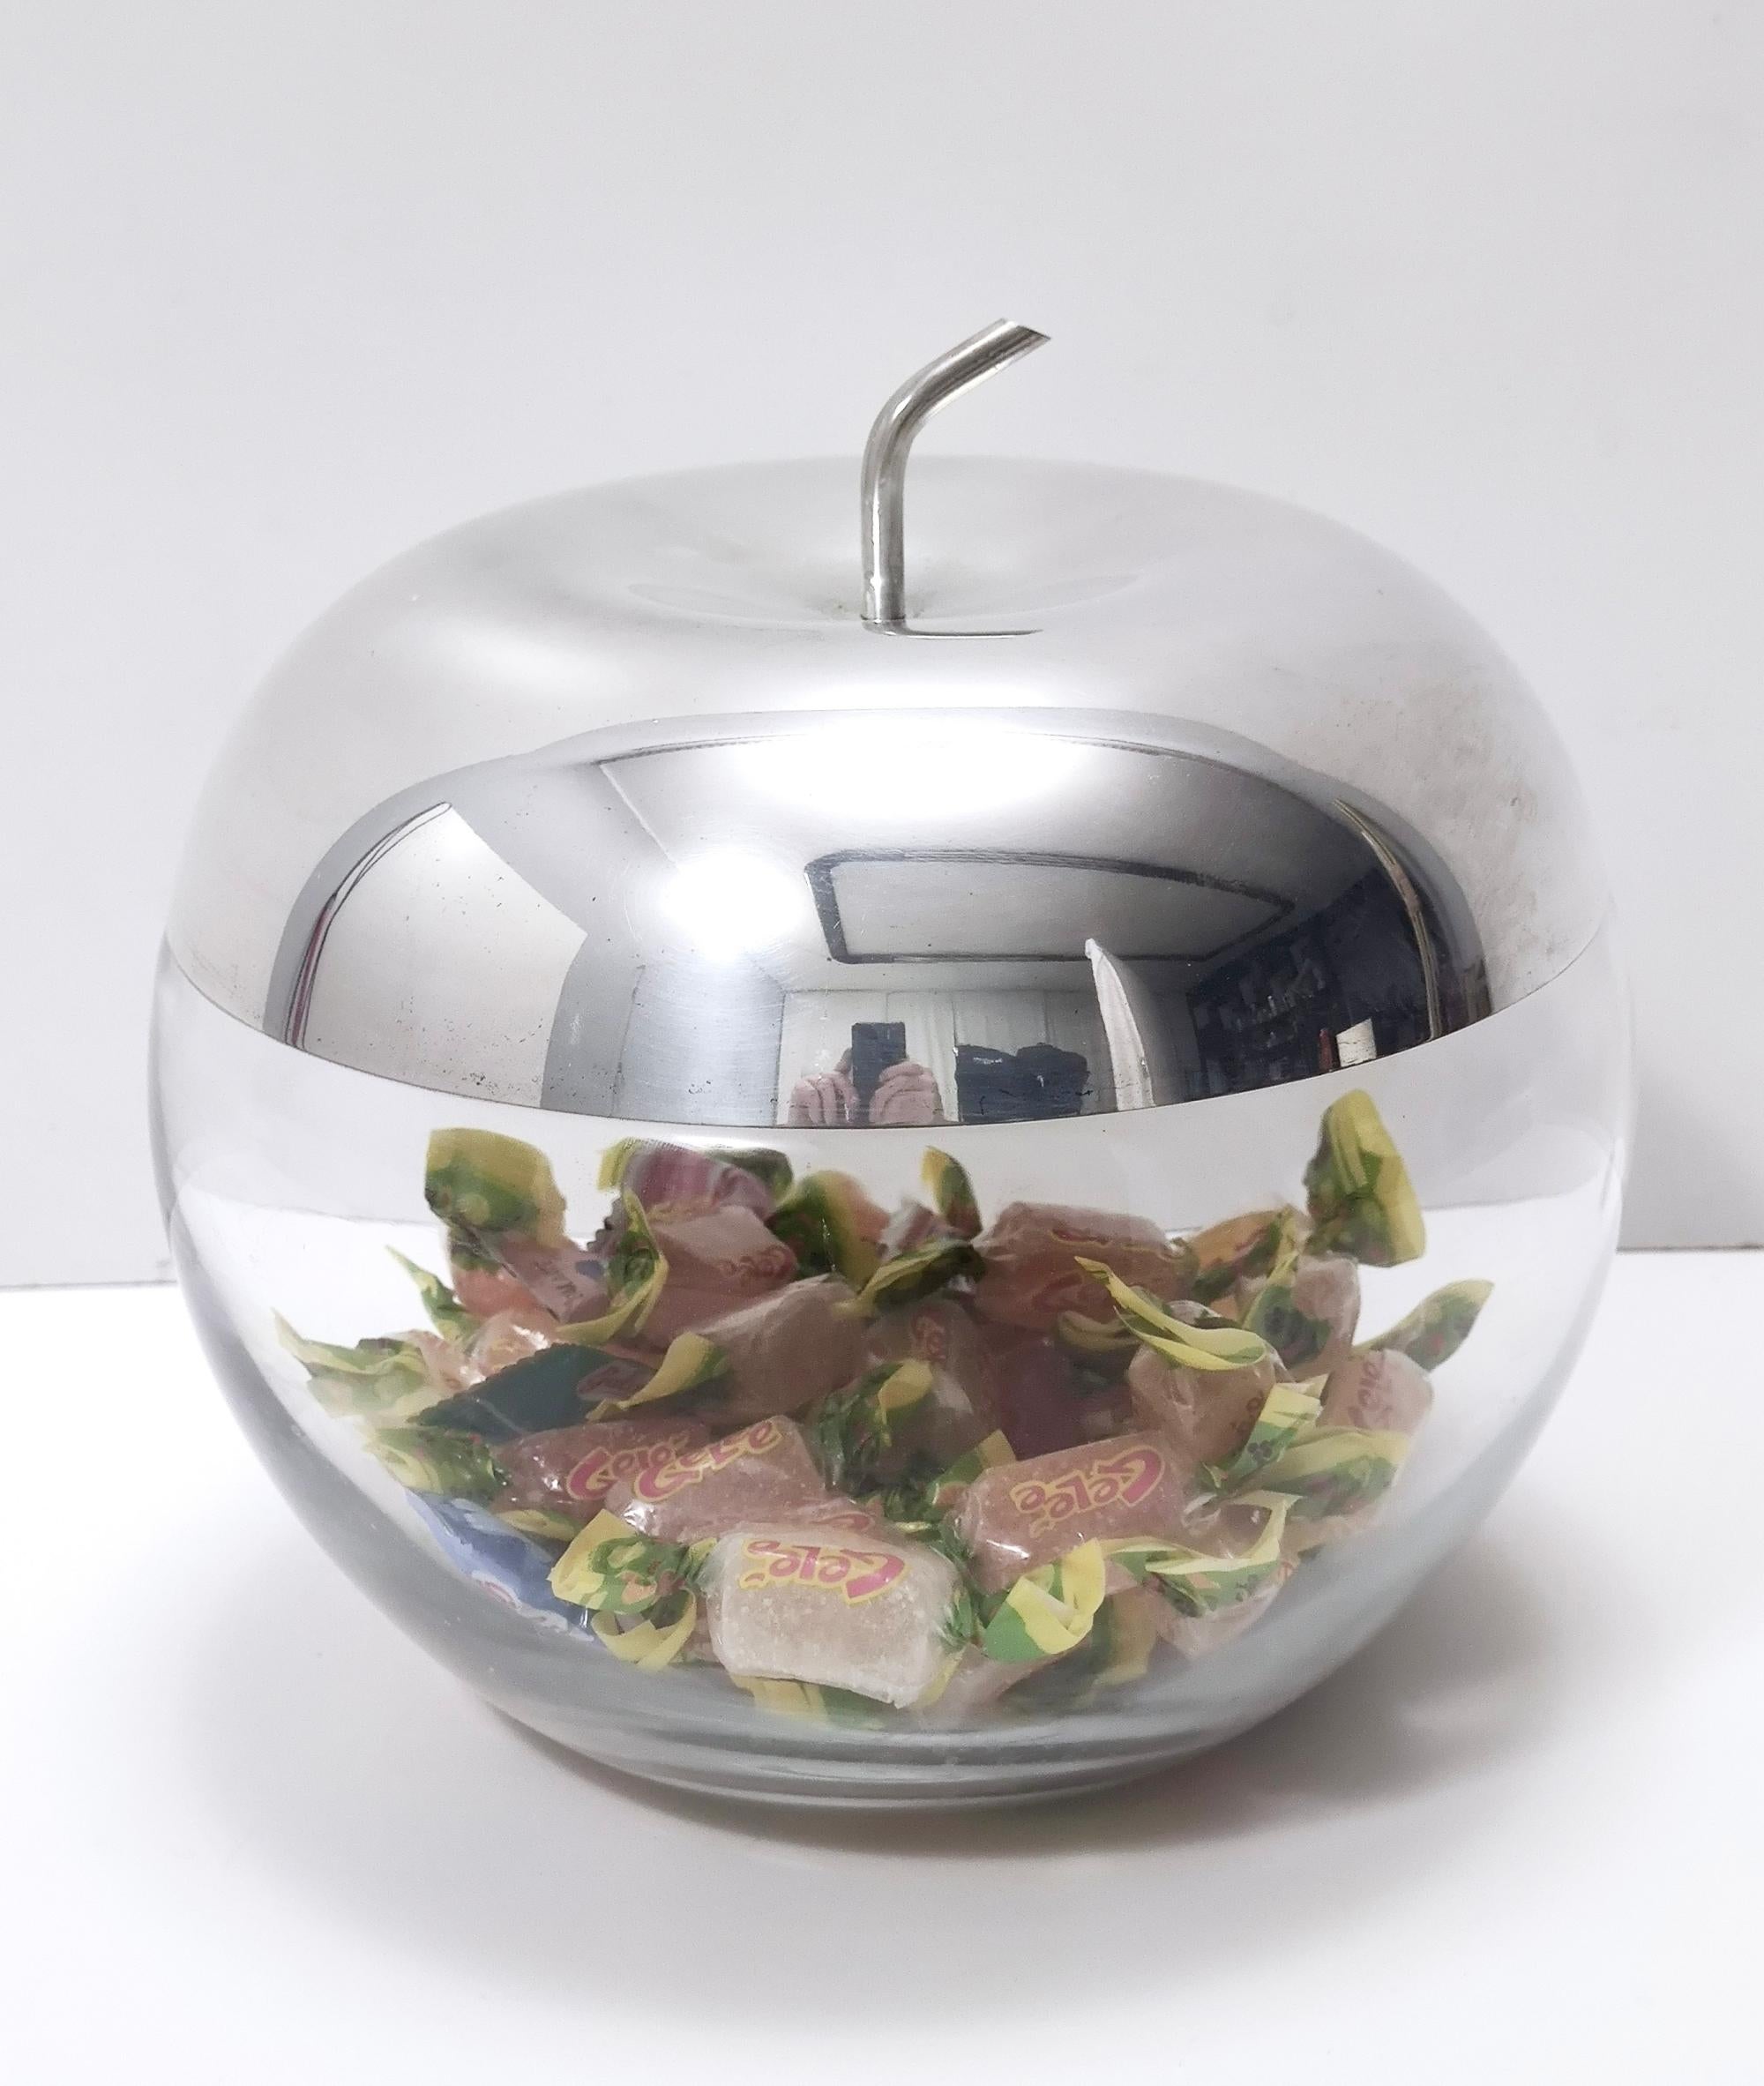 Fabriqué en Italie, années 1970.
Seau à glace très décoratif en verre en forme de pomme et en métal argenté dans le style d'Ettore Sottsass ou de Lino Sabattini.
Il peut présenter de légères traces d'utilisation puisqu'il est vintage, mais il peut